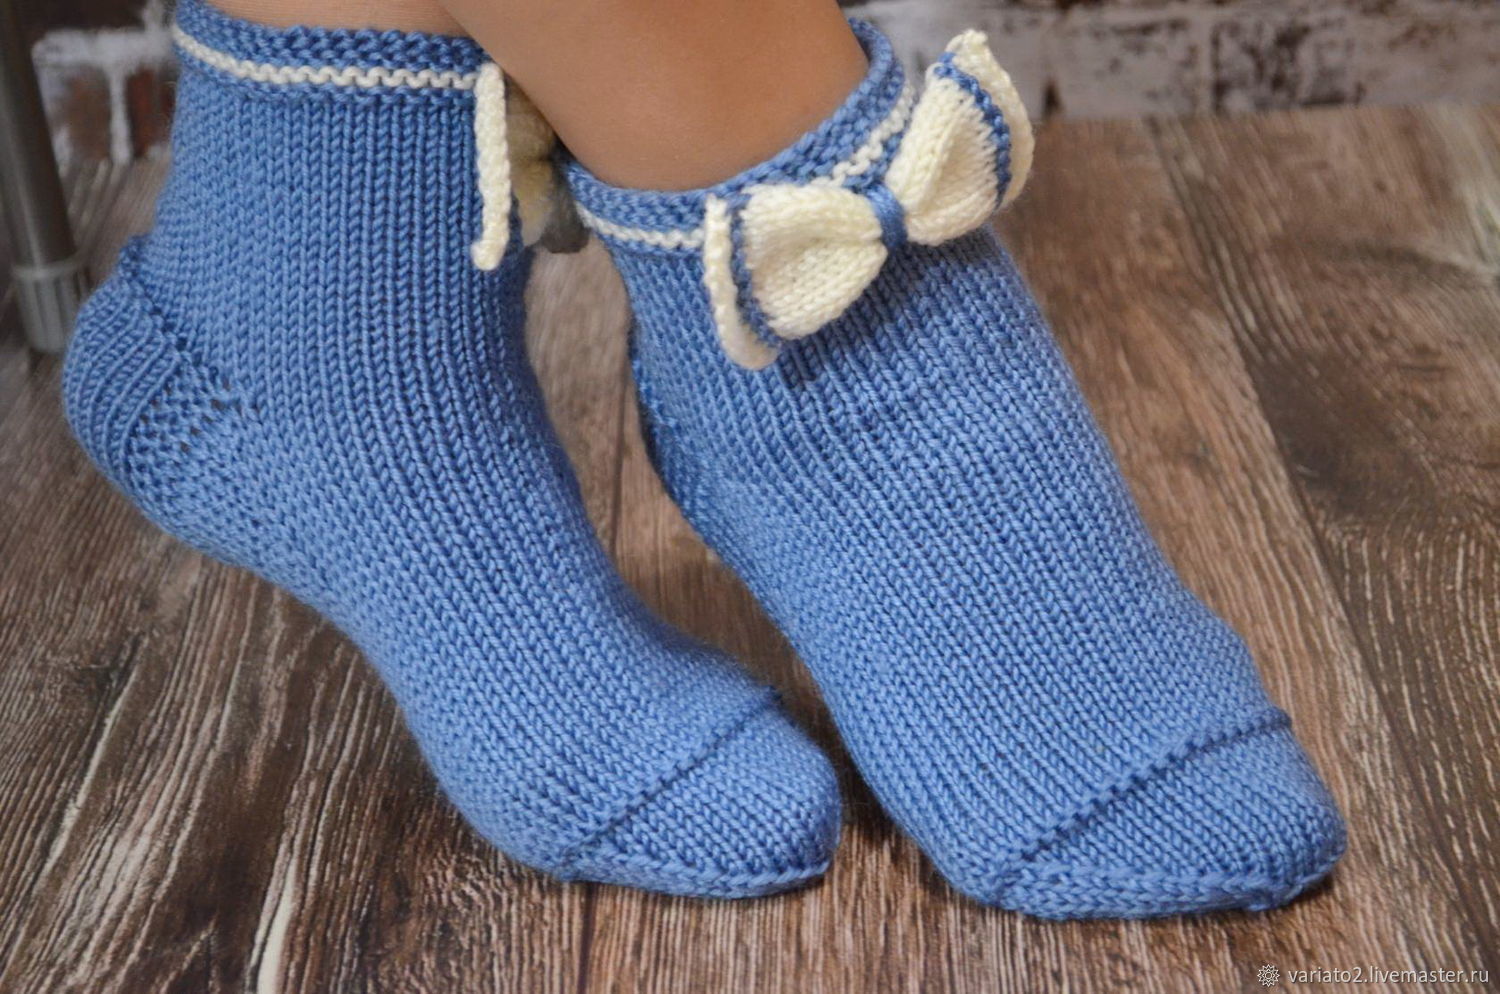 Простые носки связаны крючком столбиками с накидом Такие носки вяжутся быстро Отлично сидят на ноге и удобны в носке Если вы быстро изнашивайте пятку - этот вариант для вас Пятка вяжется отдельно и ее очень удобно заменить